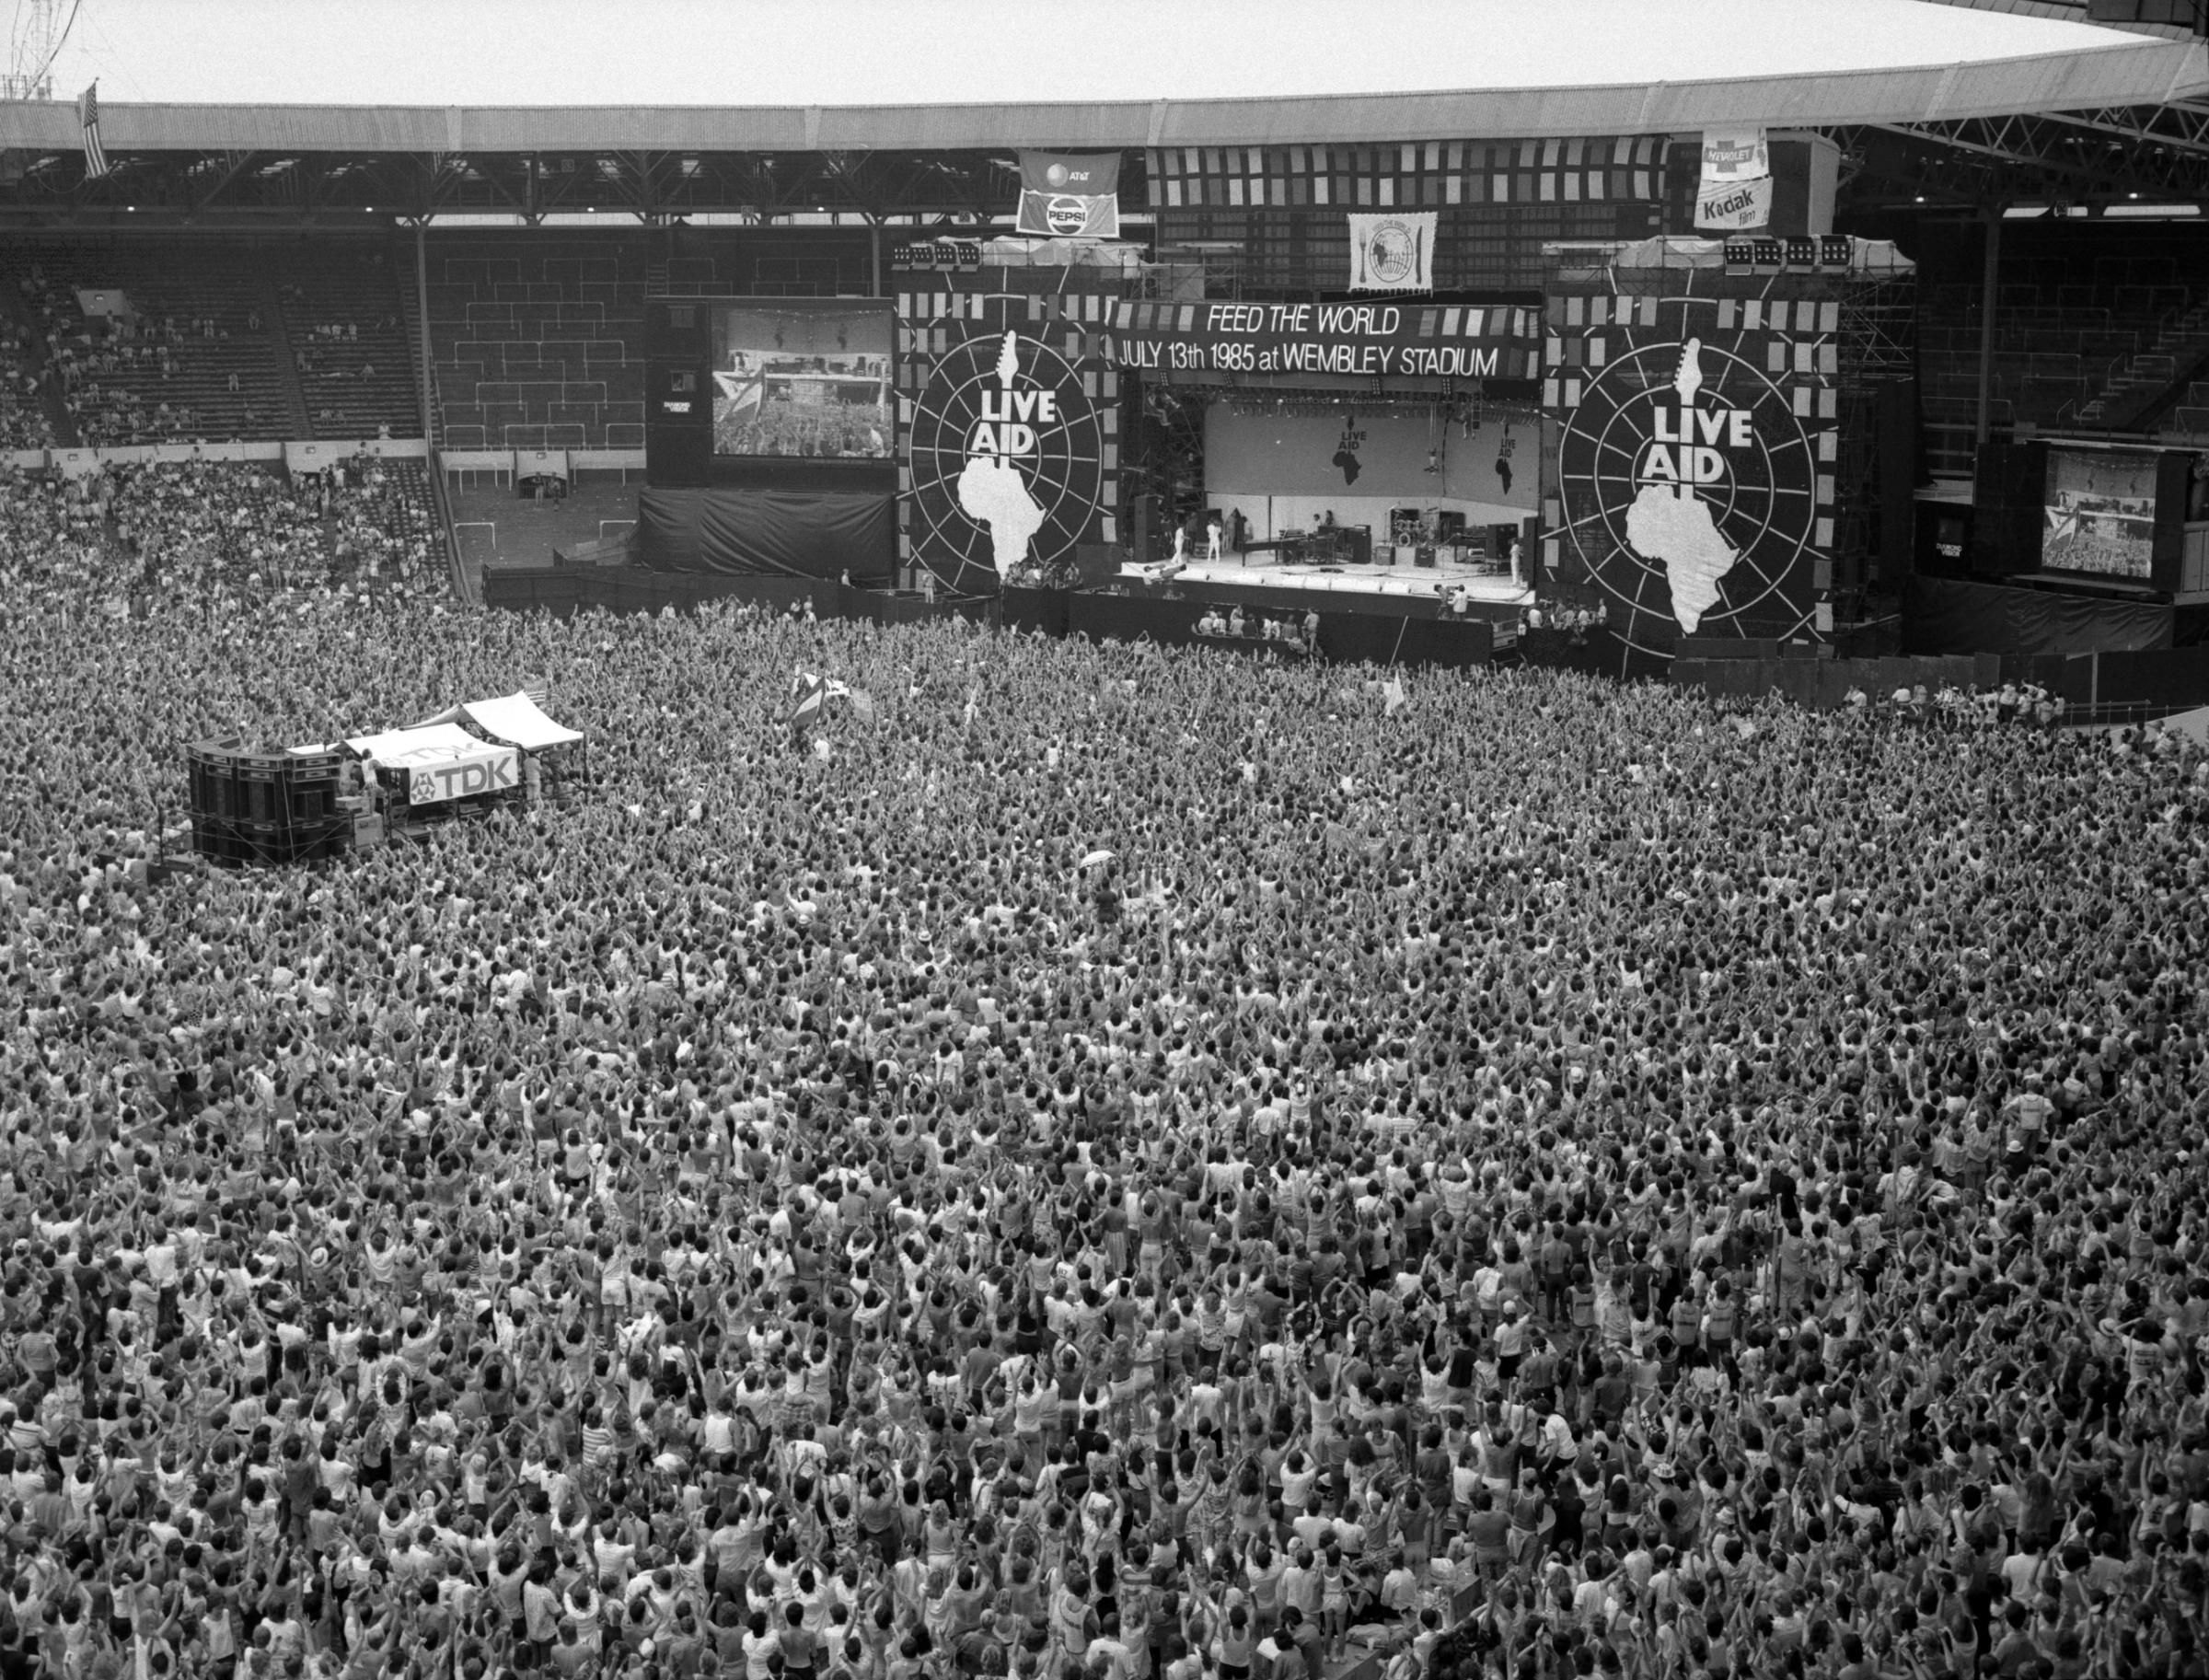 Фредди меркьюри стадион. Концерт Квин Уэмбли 1985. Куин 1985 стадион Уэмбли. Фредди Меркьюри концерт Уэмбли 1985. Концерт Live Aid 1985 Queen.